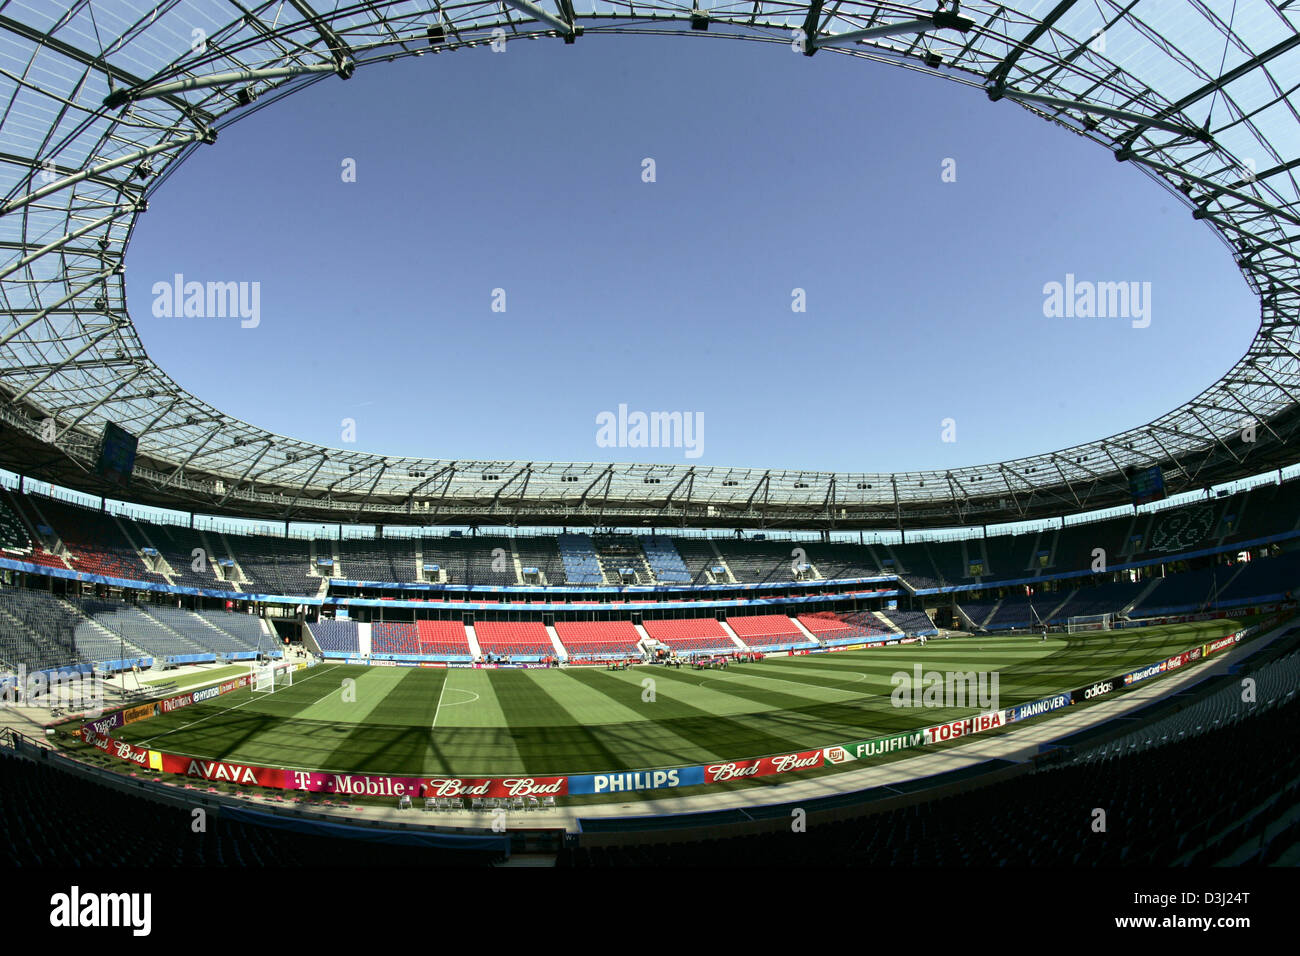 (Dpa) - ein Blick auf das Fußballstadion AWD-Arena in Hannover, 19. Juni 2005. Das Stadion, das im Jahr 1954 gebaut wurde, war vor kurzem für einen Betrag von 63 Millionen Euro renoviert und bietet nun Platz für 39.300 Zuschauer. Der AWD-Arena ist einer der Austragungsorte der FIFA Fußball WM 2006 in Deutschland hosten. Stockfoto